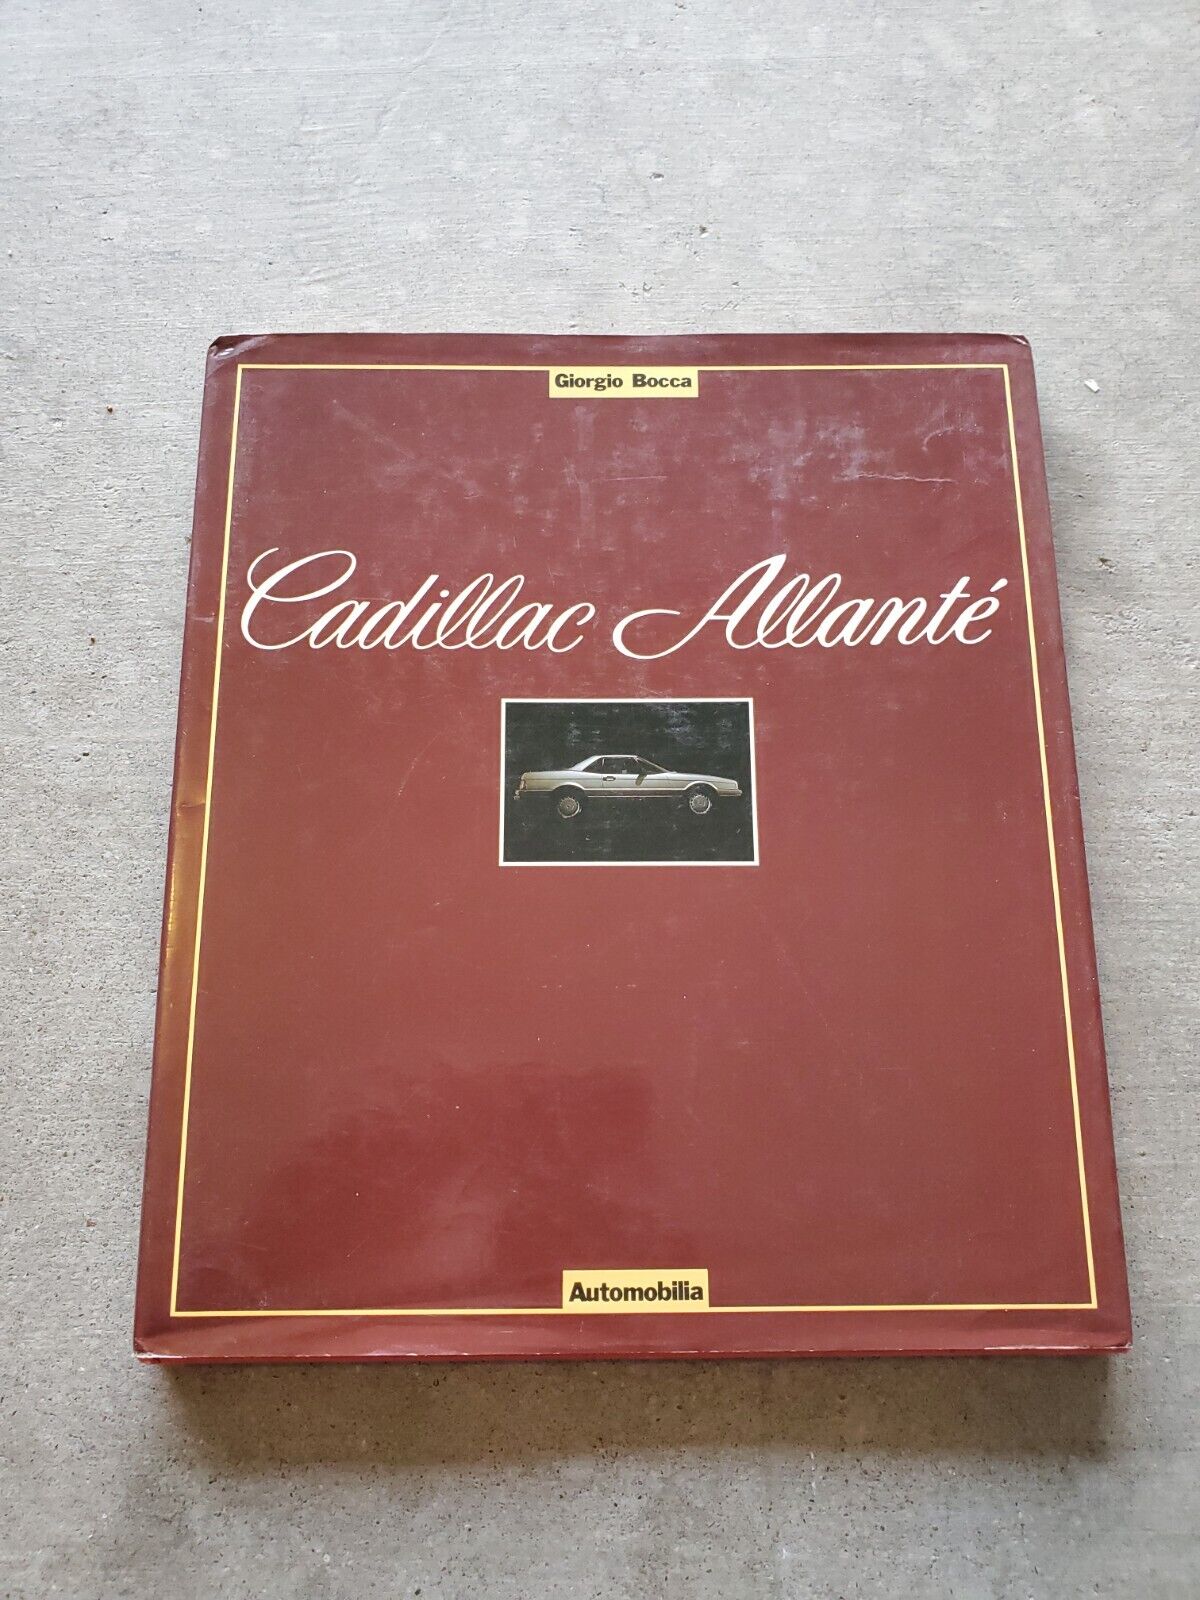 Cadillac Allante  Giorgio Bocca Automobilia Rare 1986 French Italian English 